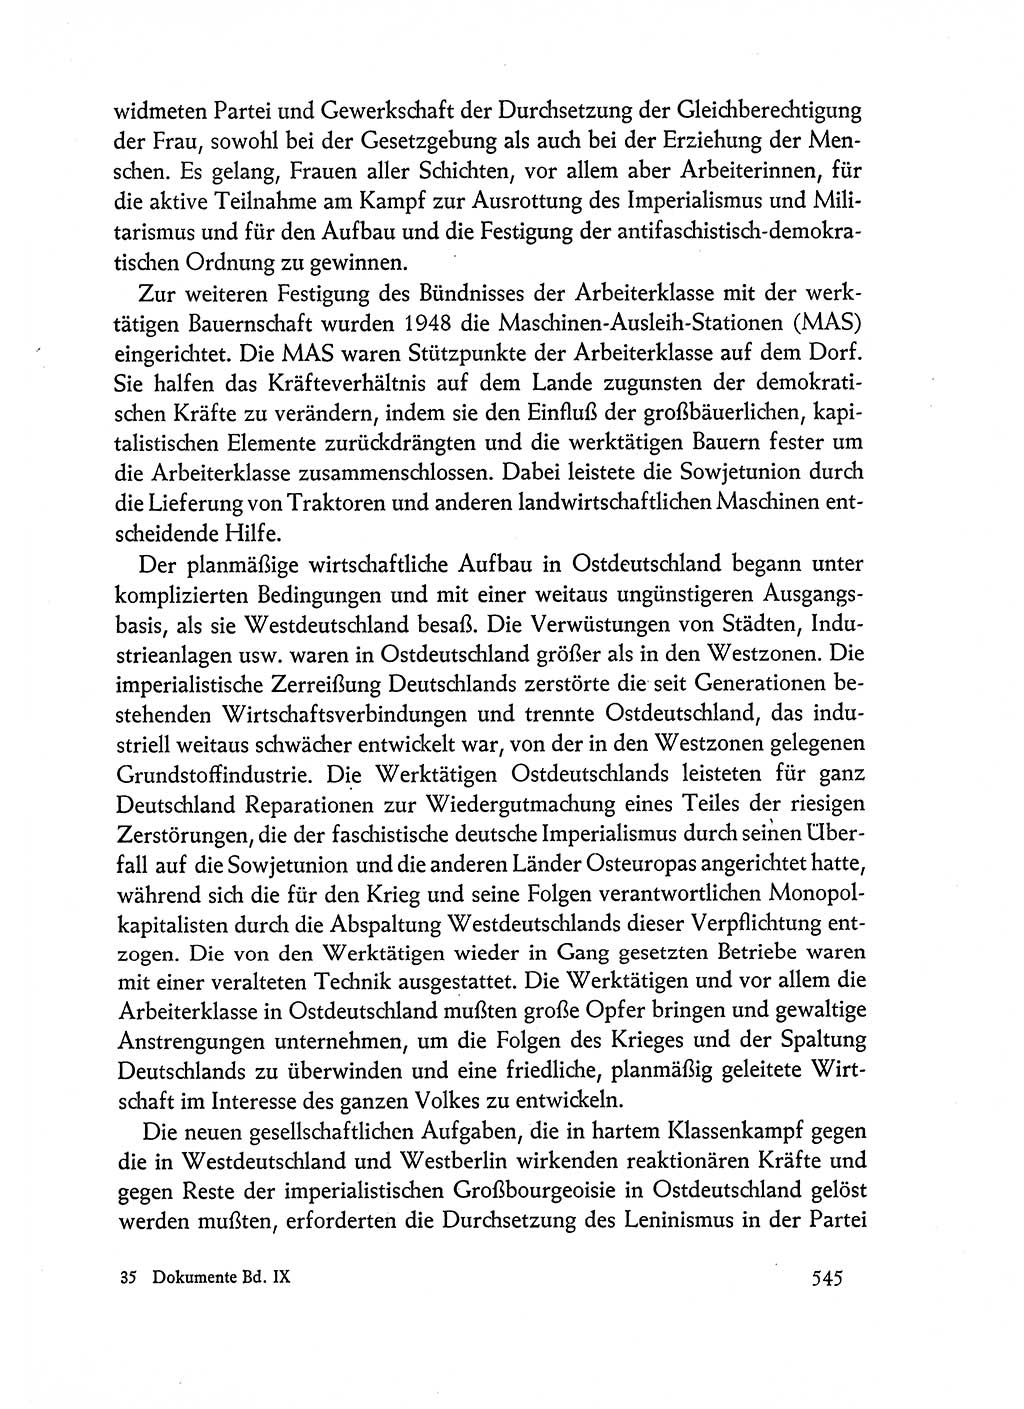 Dokumente der Sozialistischen Einheitspartei Deutschlands (SED) [Deutsche Demokratische Republik (DDR)] 1962-1963, Seite 545 (Dok. SED DDR 1962-1963, S. 545)